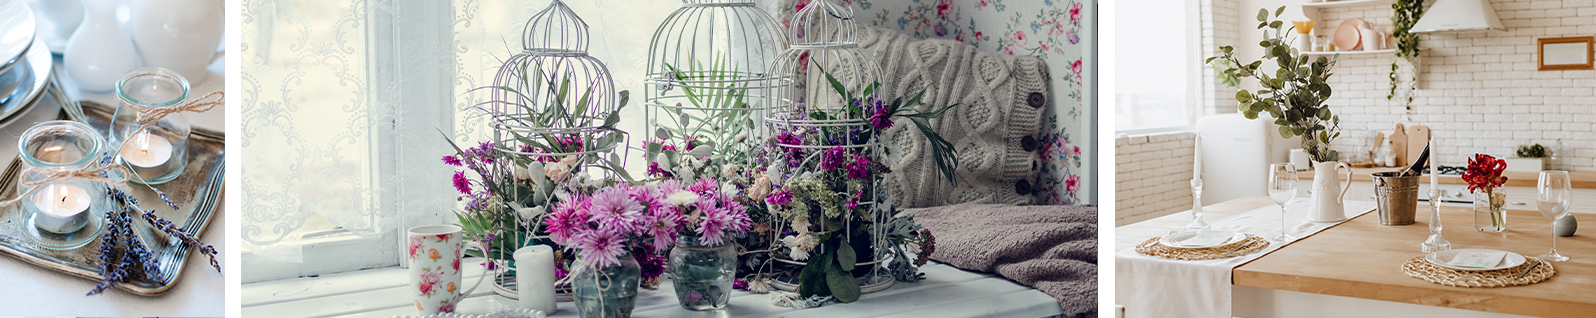 bougies dans verre sur un plateau, plantes et fleurs de Provance dans vase et cage en métal, cuisine avec déco de table campagne